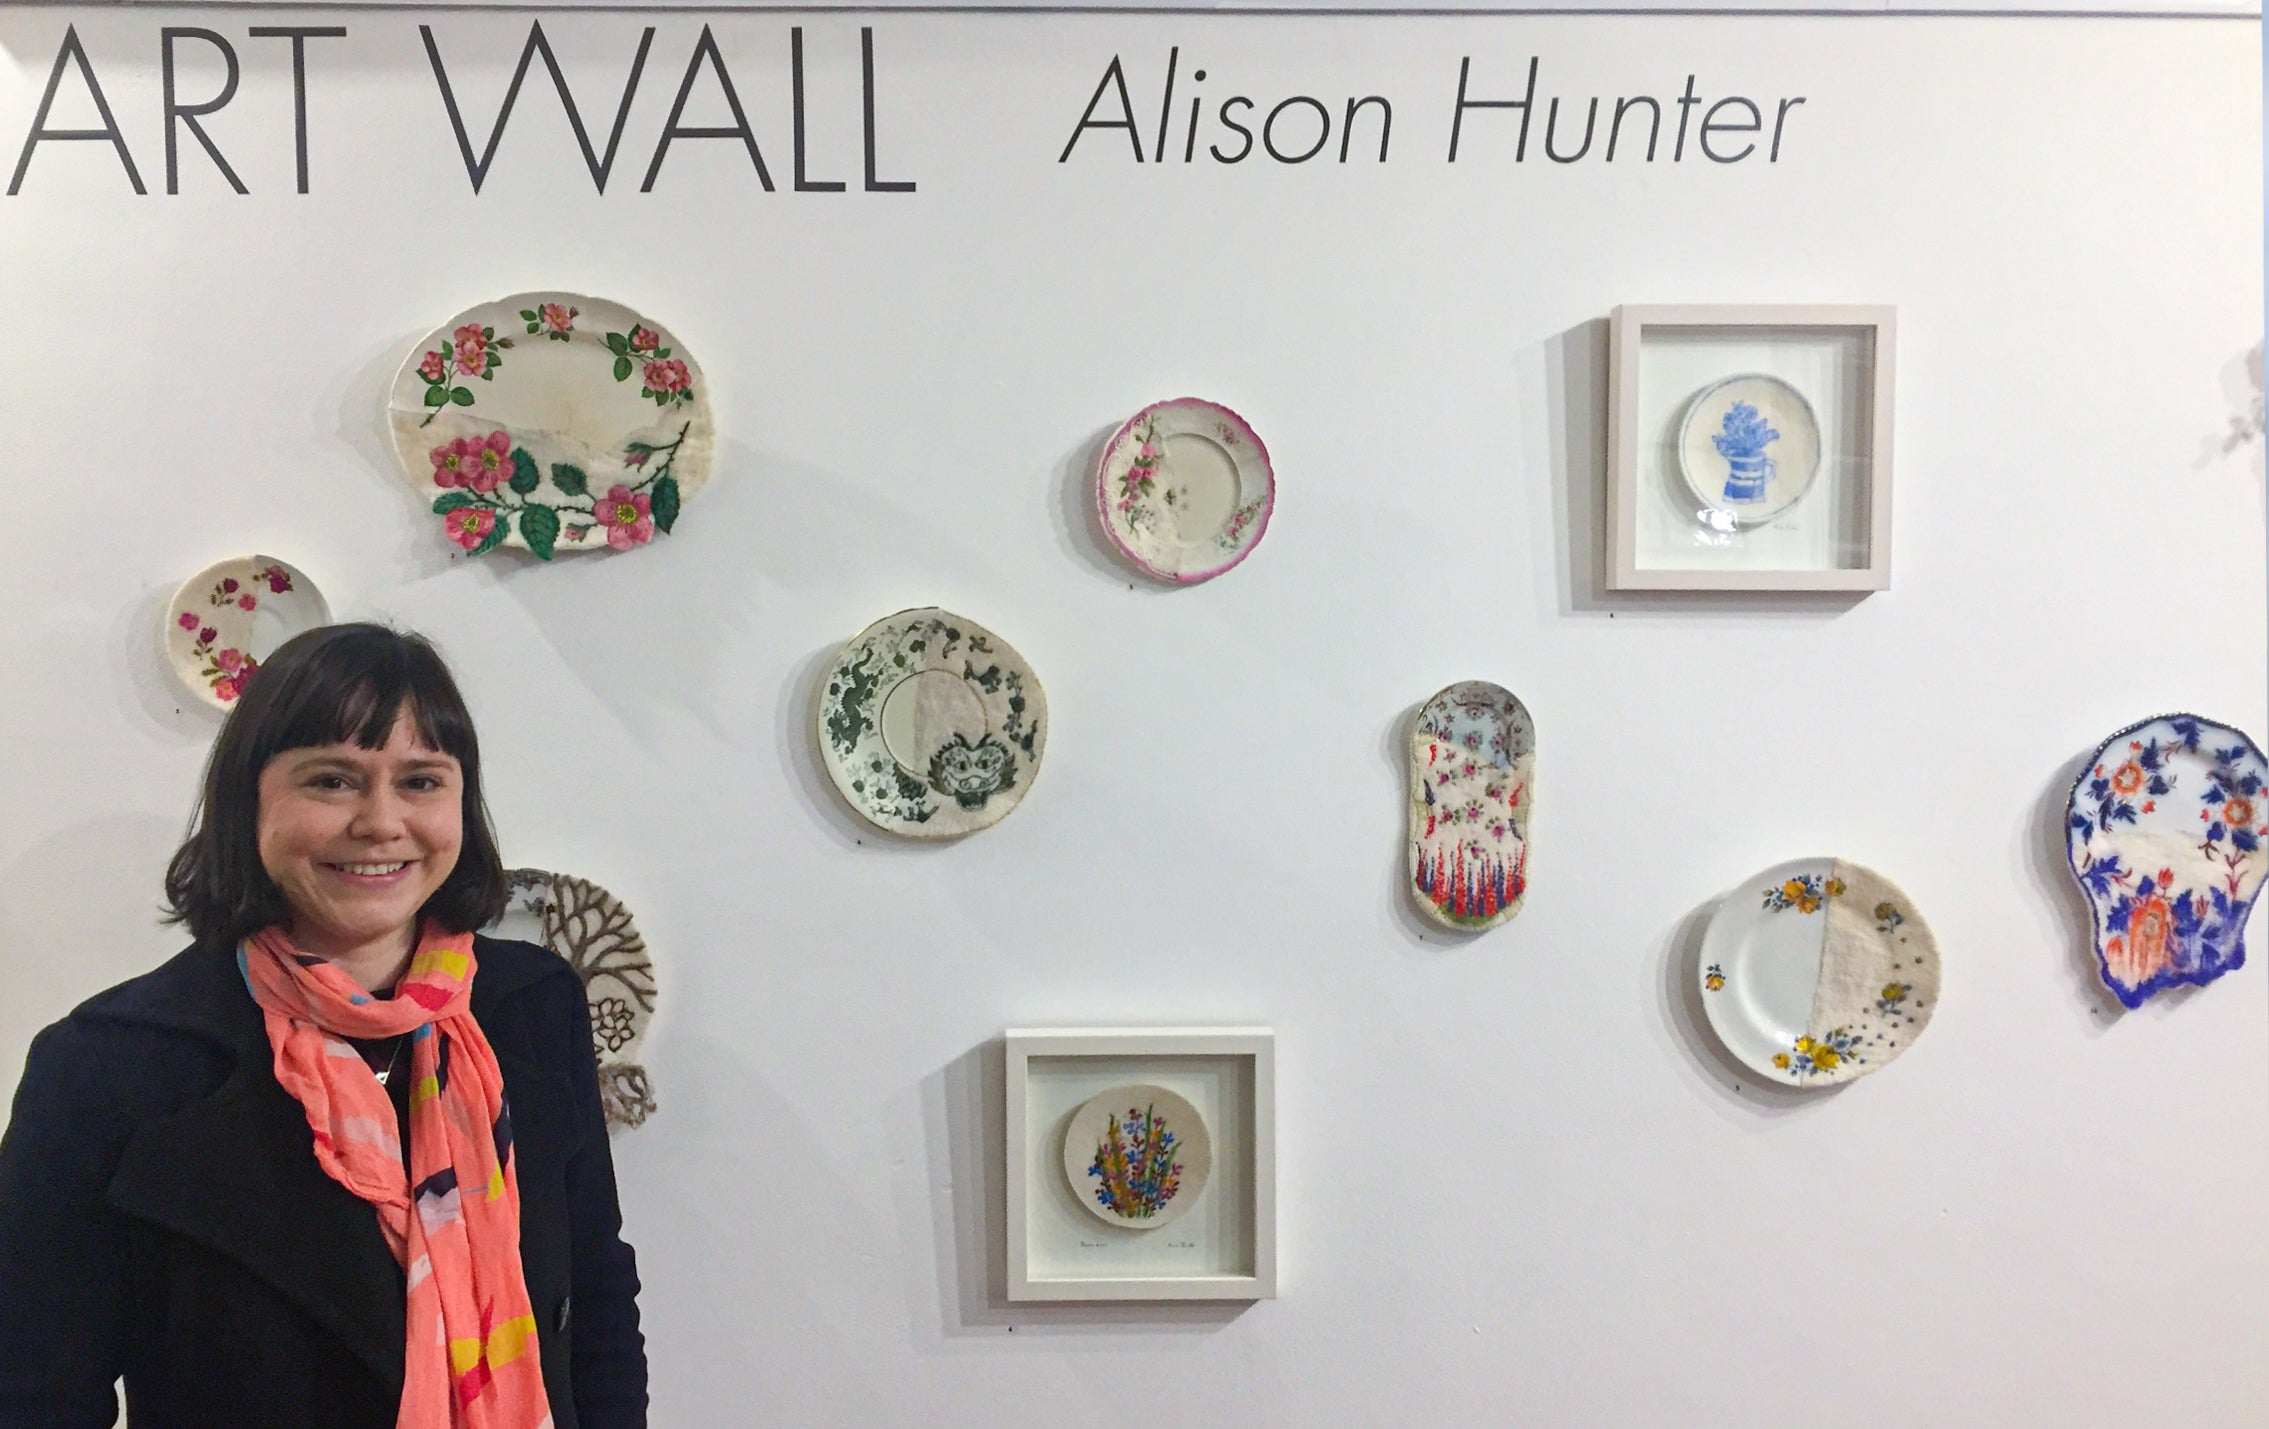 ARTWALL 2019: Alison Hunter